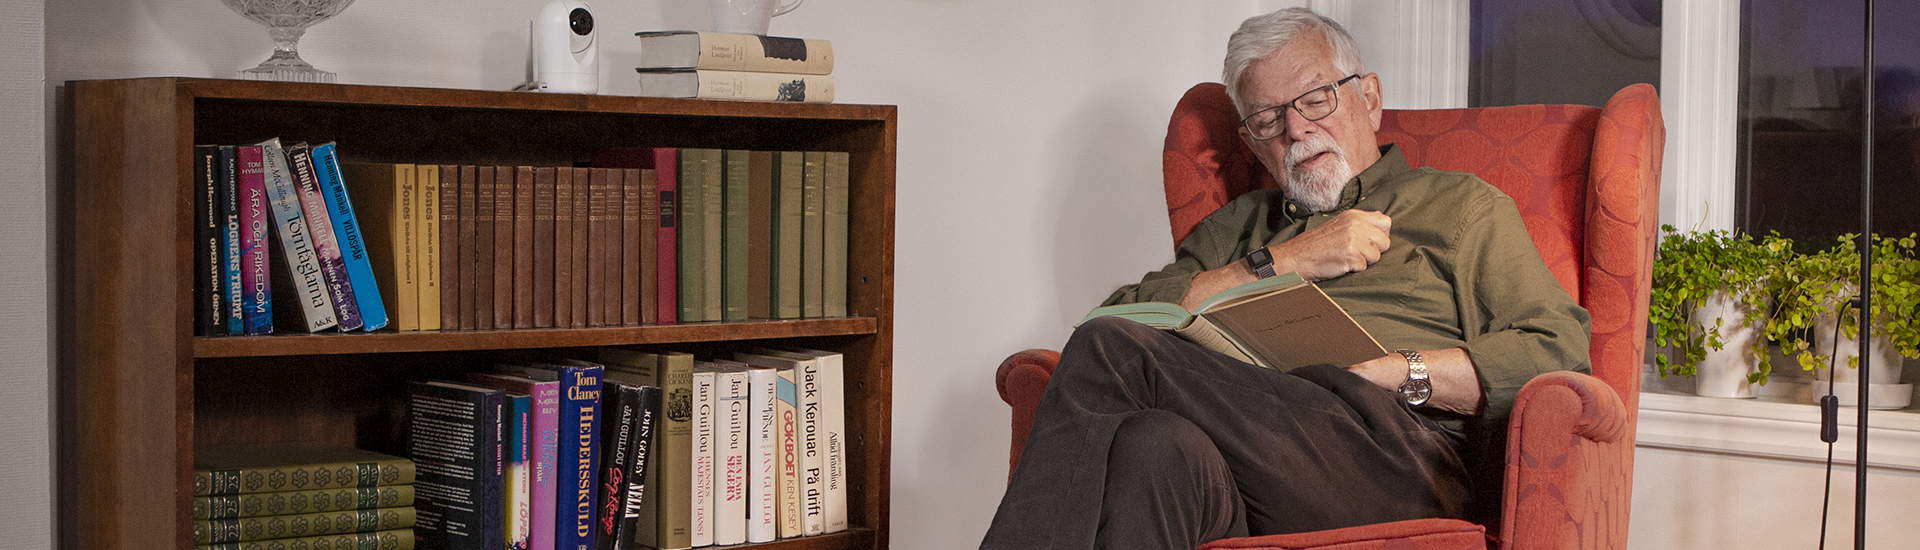 Eldre mann i lenestol som leser en bok, og Doro Visit-kamera på bokhyllen 